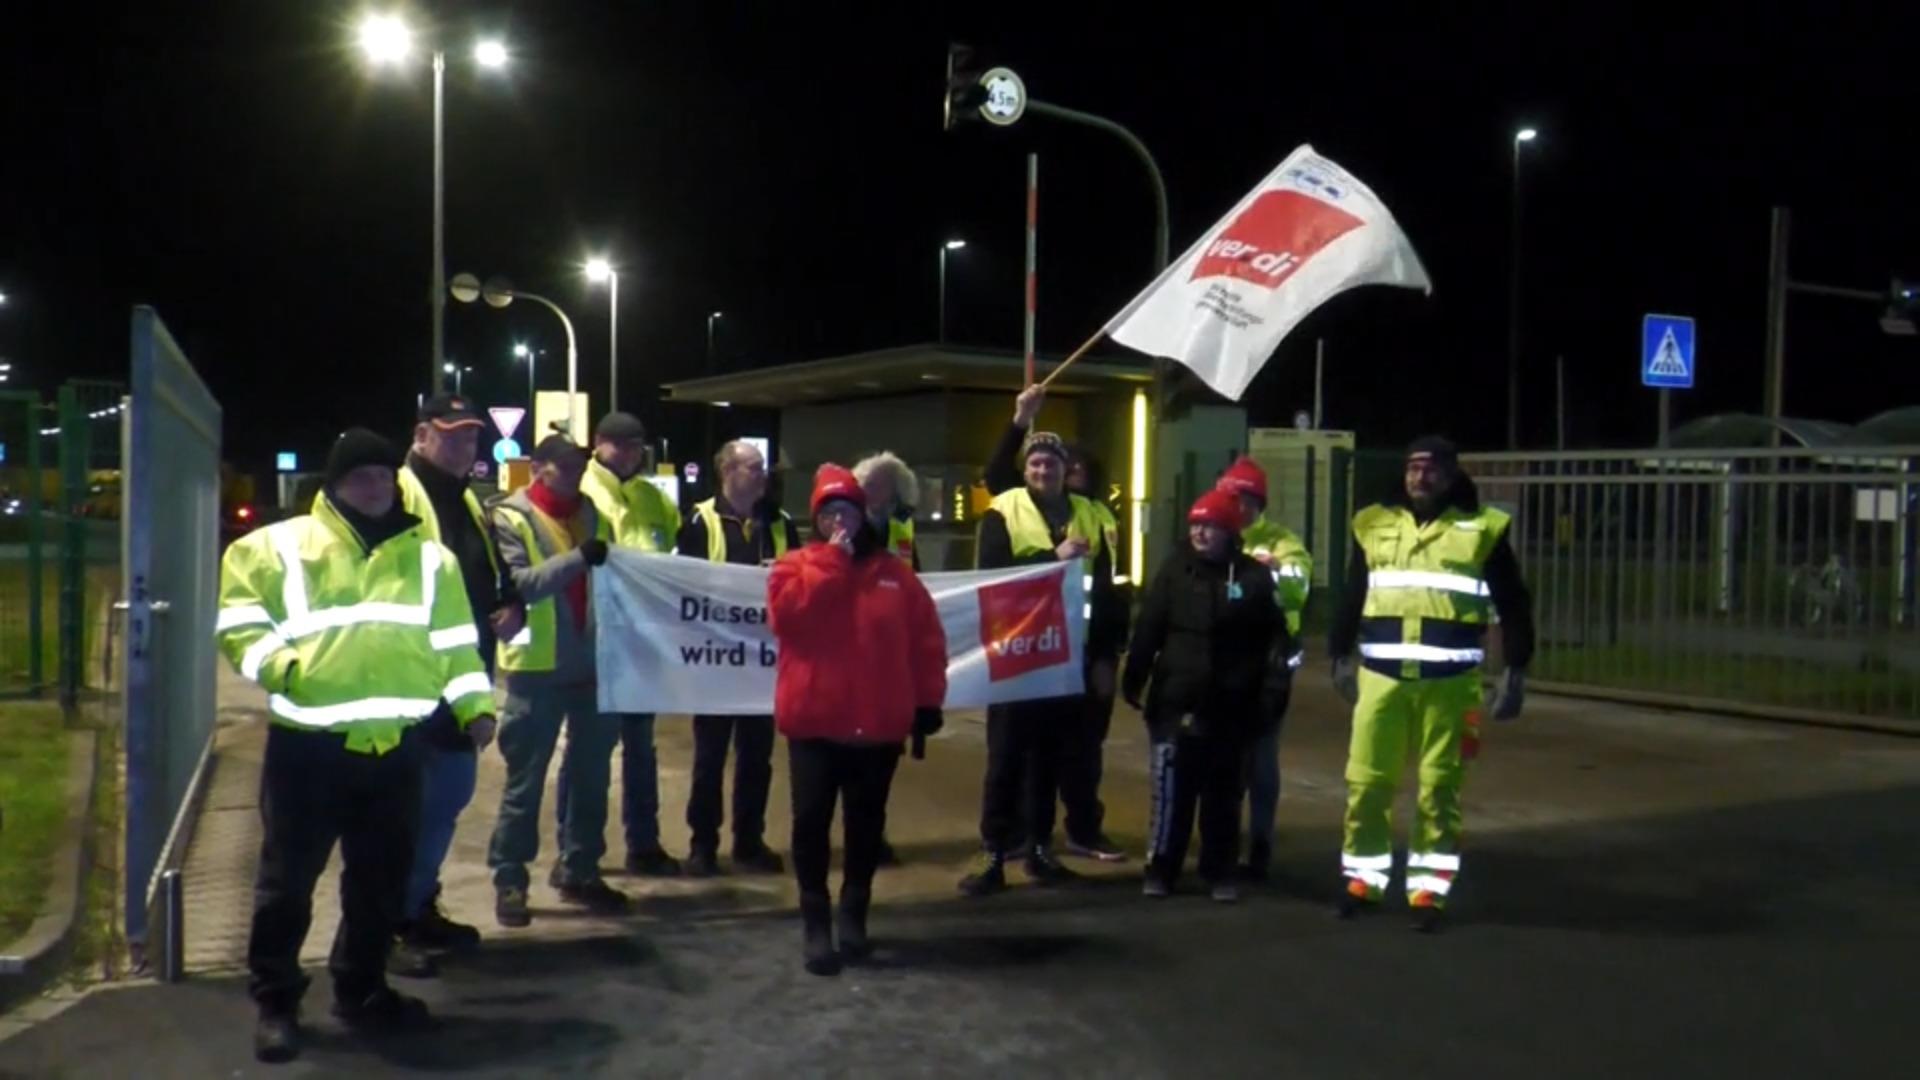 Post-Gewerkschaft will 15 Prozent mehr Gehalt Streik bei DHL und Post